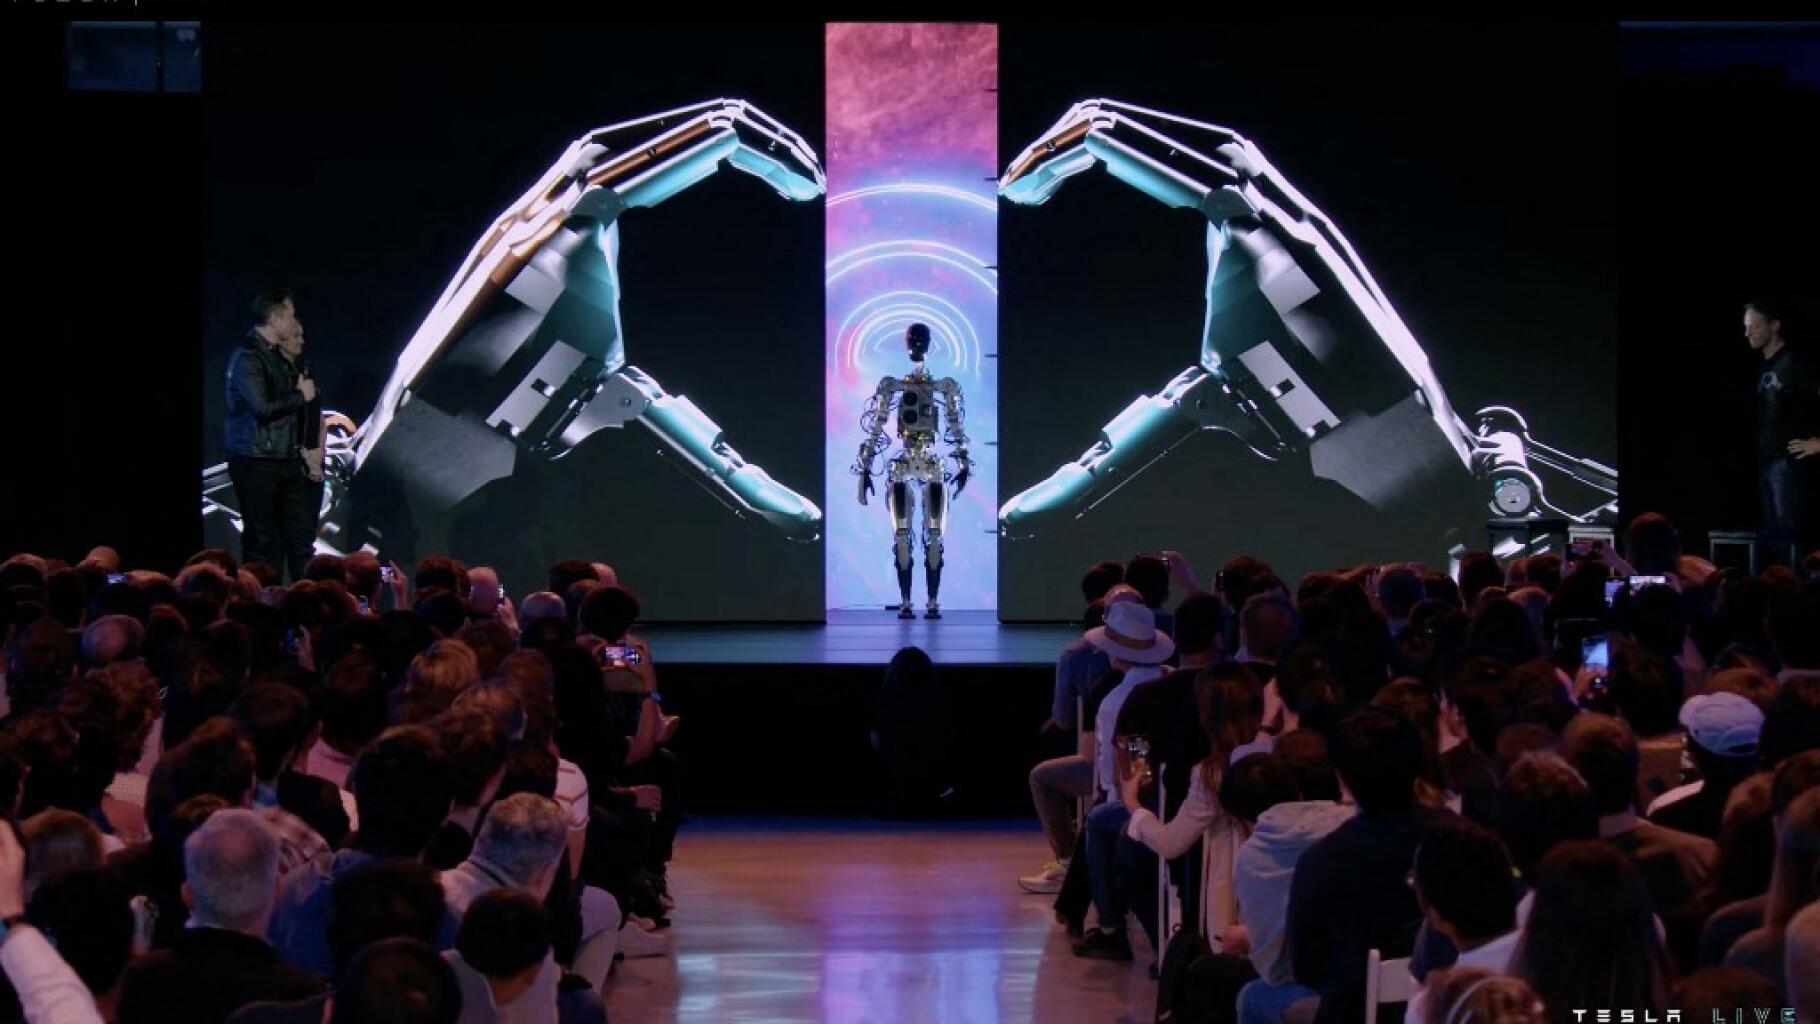 Elon Musk et Tesla lancent Optimus, un robot humanoïde qui « transformera la civilisation » - Le HuffPost